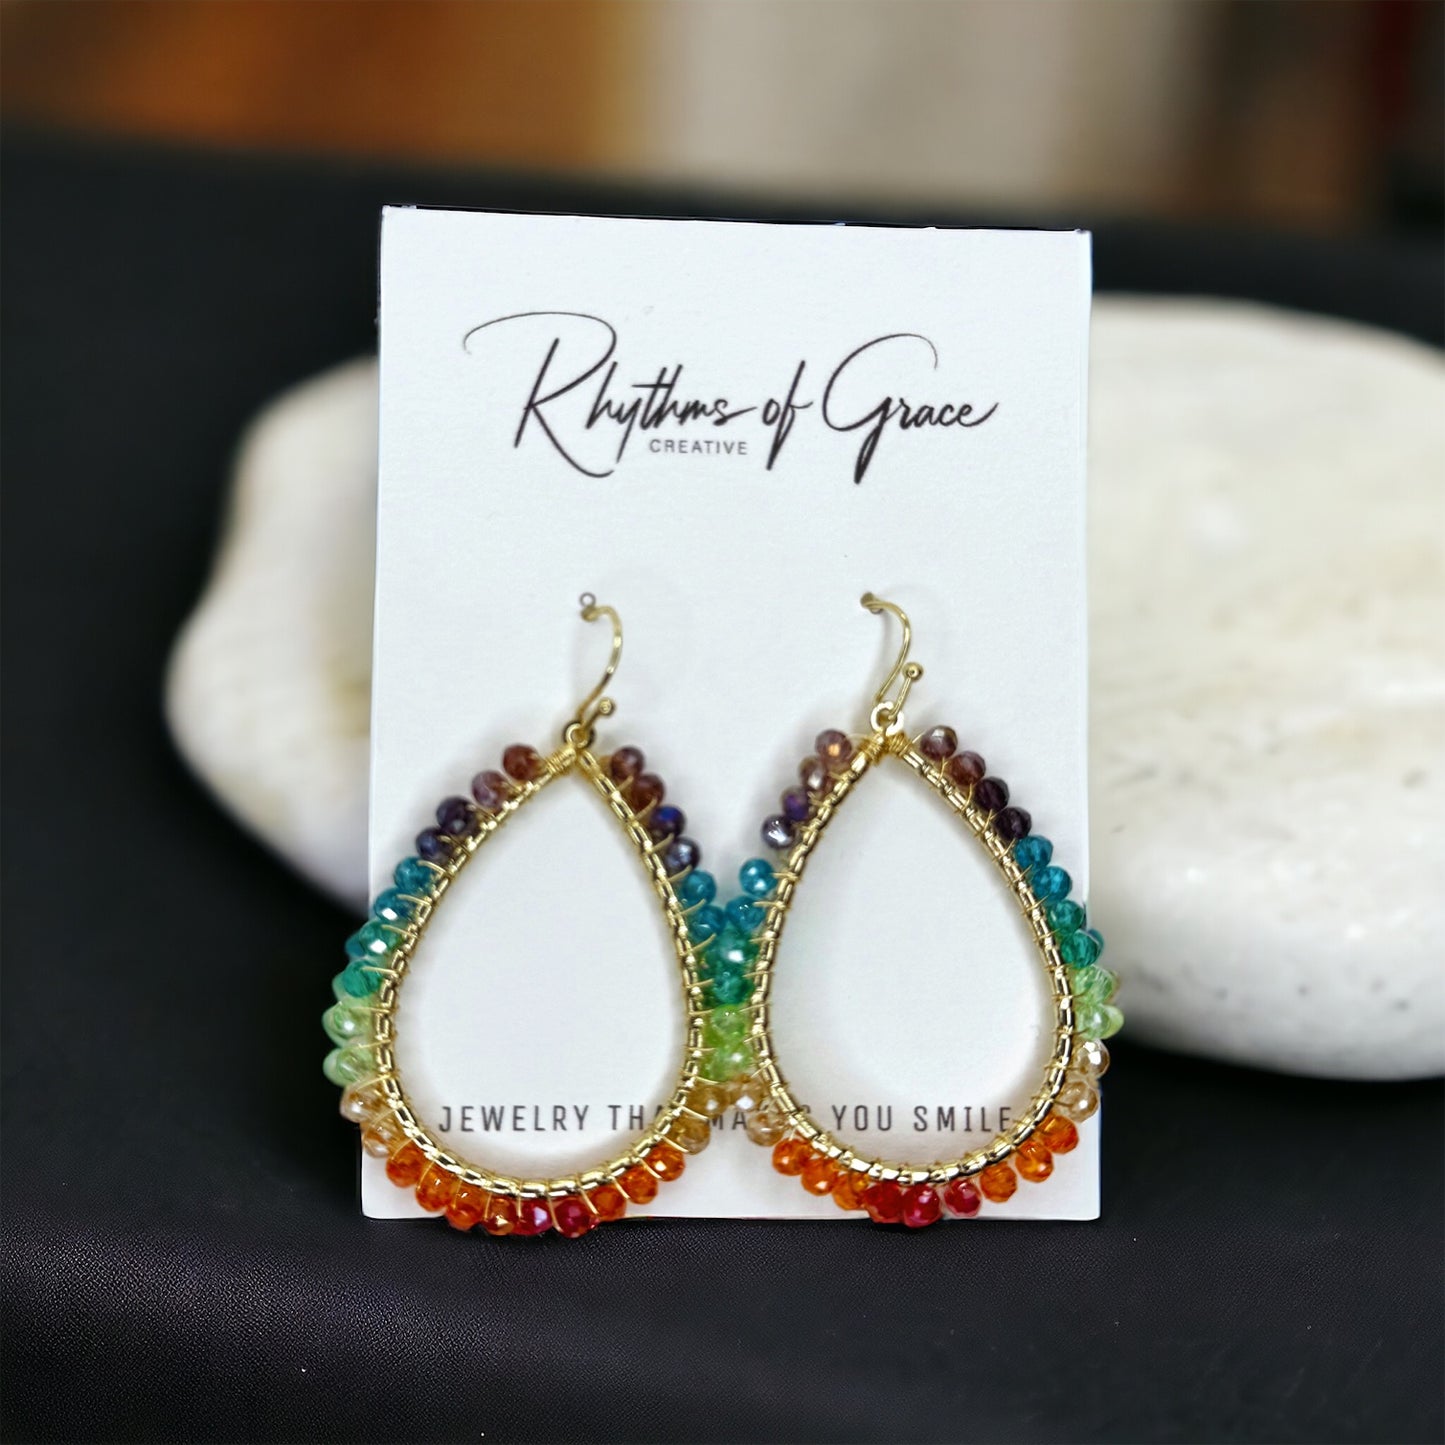 Beaded Rainbow Earrings - Rainbows, PRIDE Earrings, Rainbow Earrings, Pride Accessories, LGBTQ, Rainbow Accessories